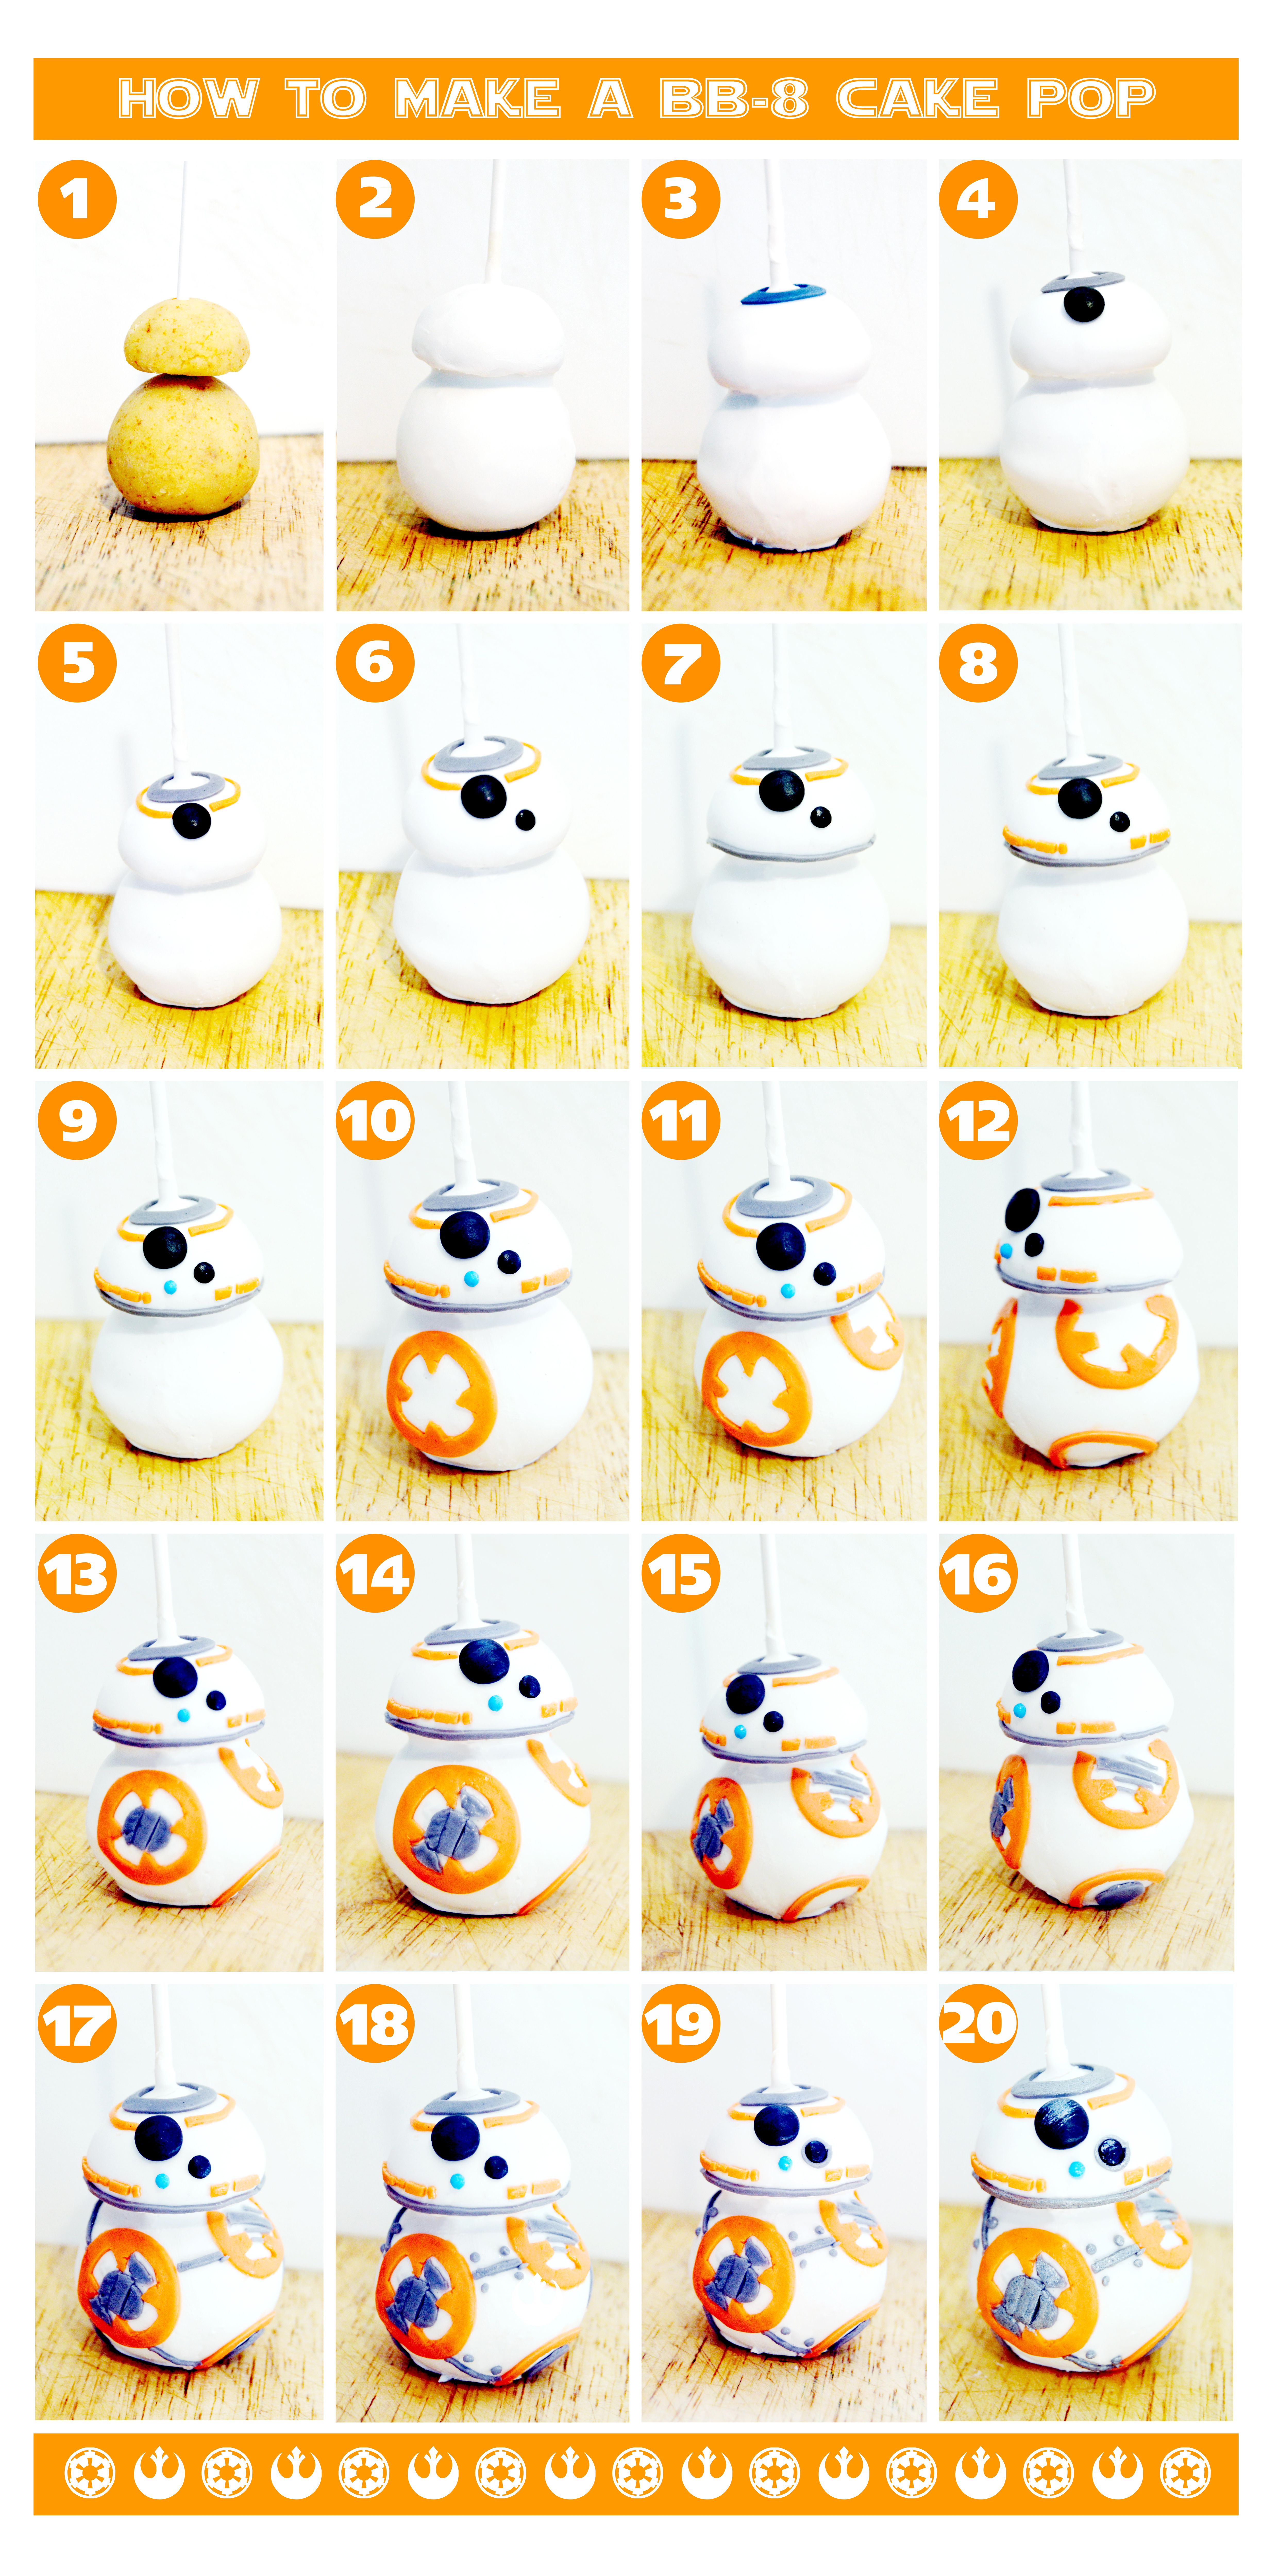 Fiche recette - Gâteau à thème - BB-8 Cake Star Wars - Féerie cake